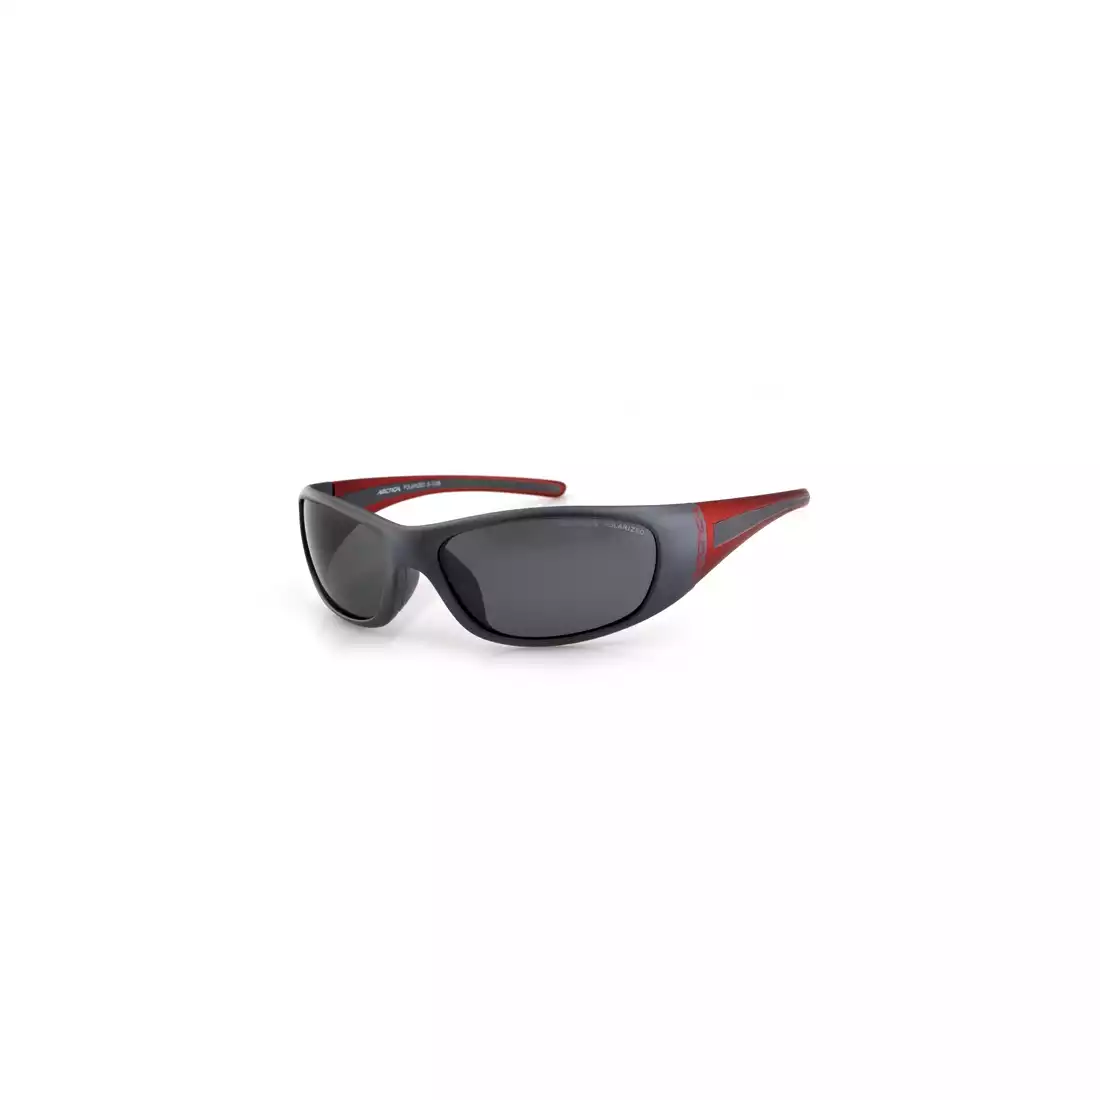 ARCTICA okulary sportowe S-103 B - kolor: Szaro-czerwony